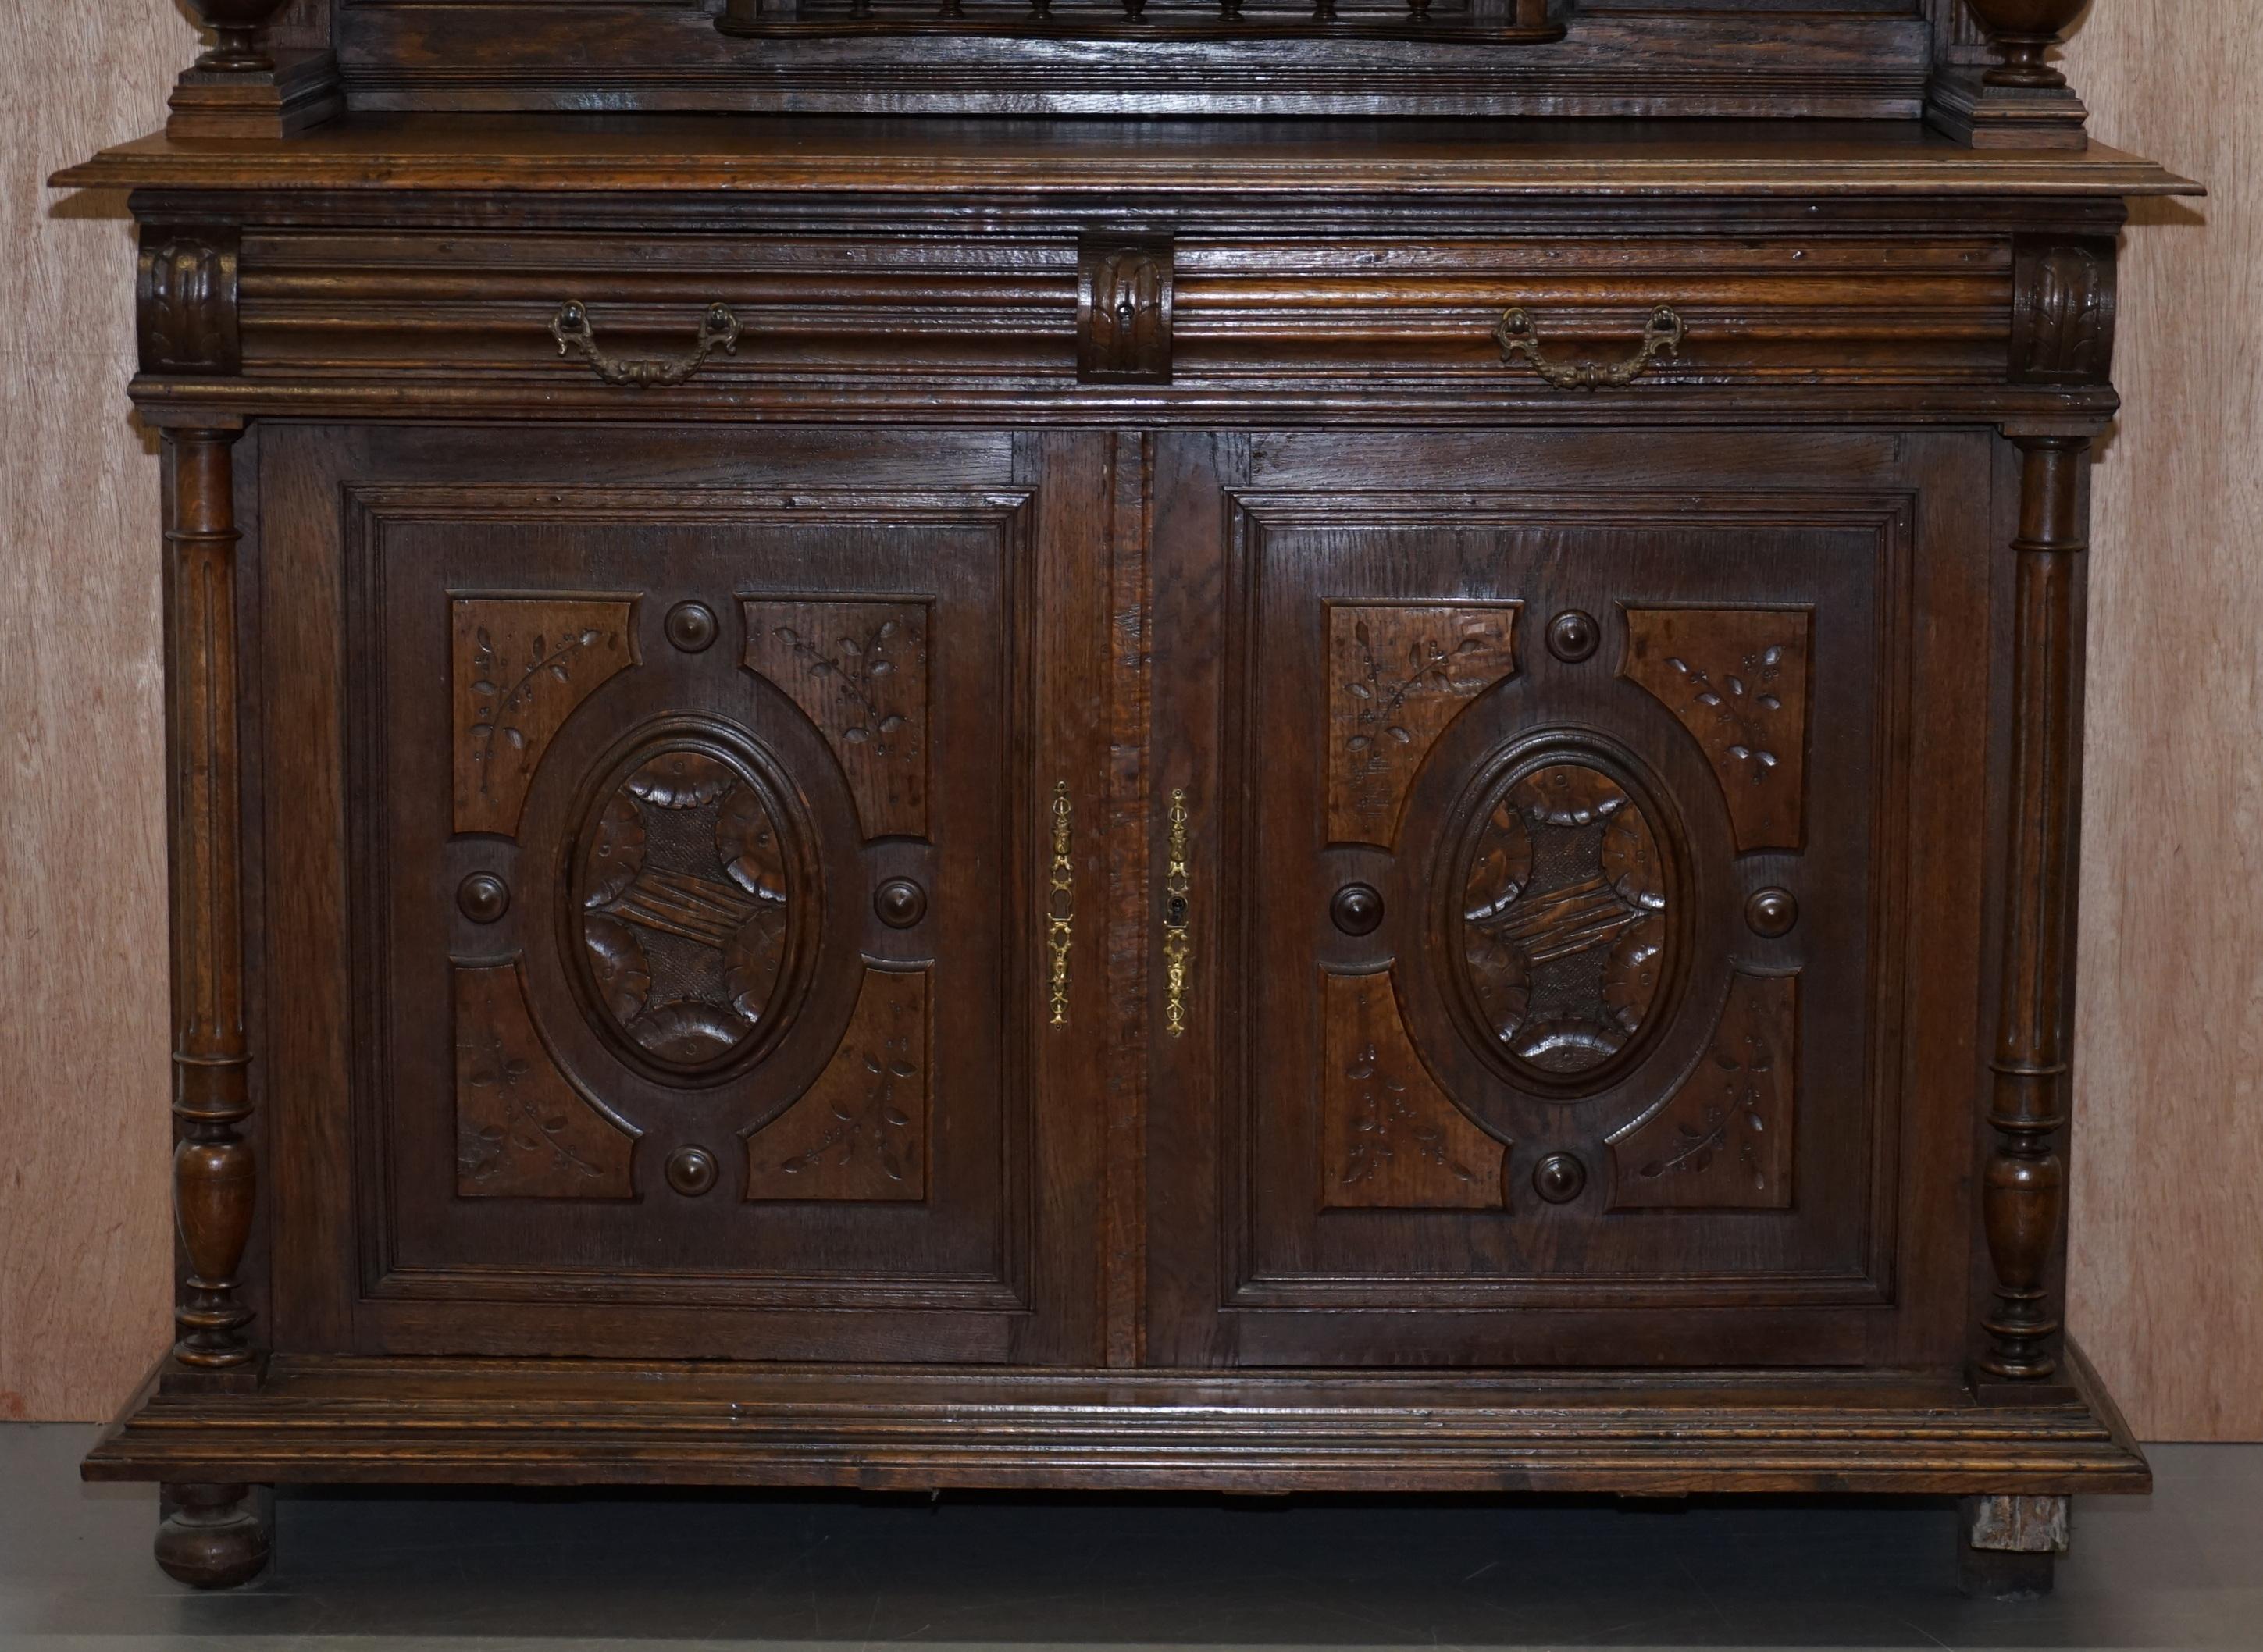 Nous sommes ravis de proposer à la vente cette superbe armoire hollandaise originale du début du 19e siècle, sculptée à la main.

Il s'agit d'une très belle pièce de bonne facture, sculptée de manière ornementale et joliment détaillée, idéale pour